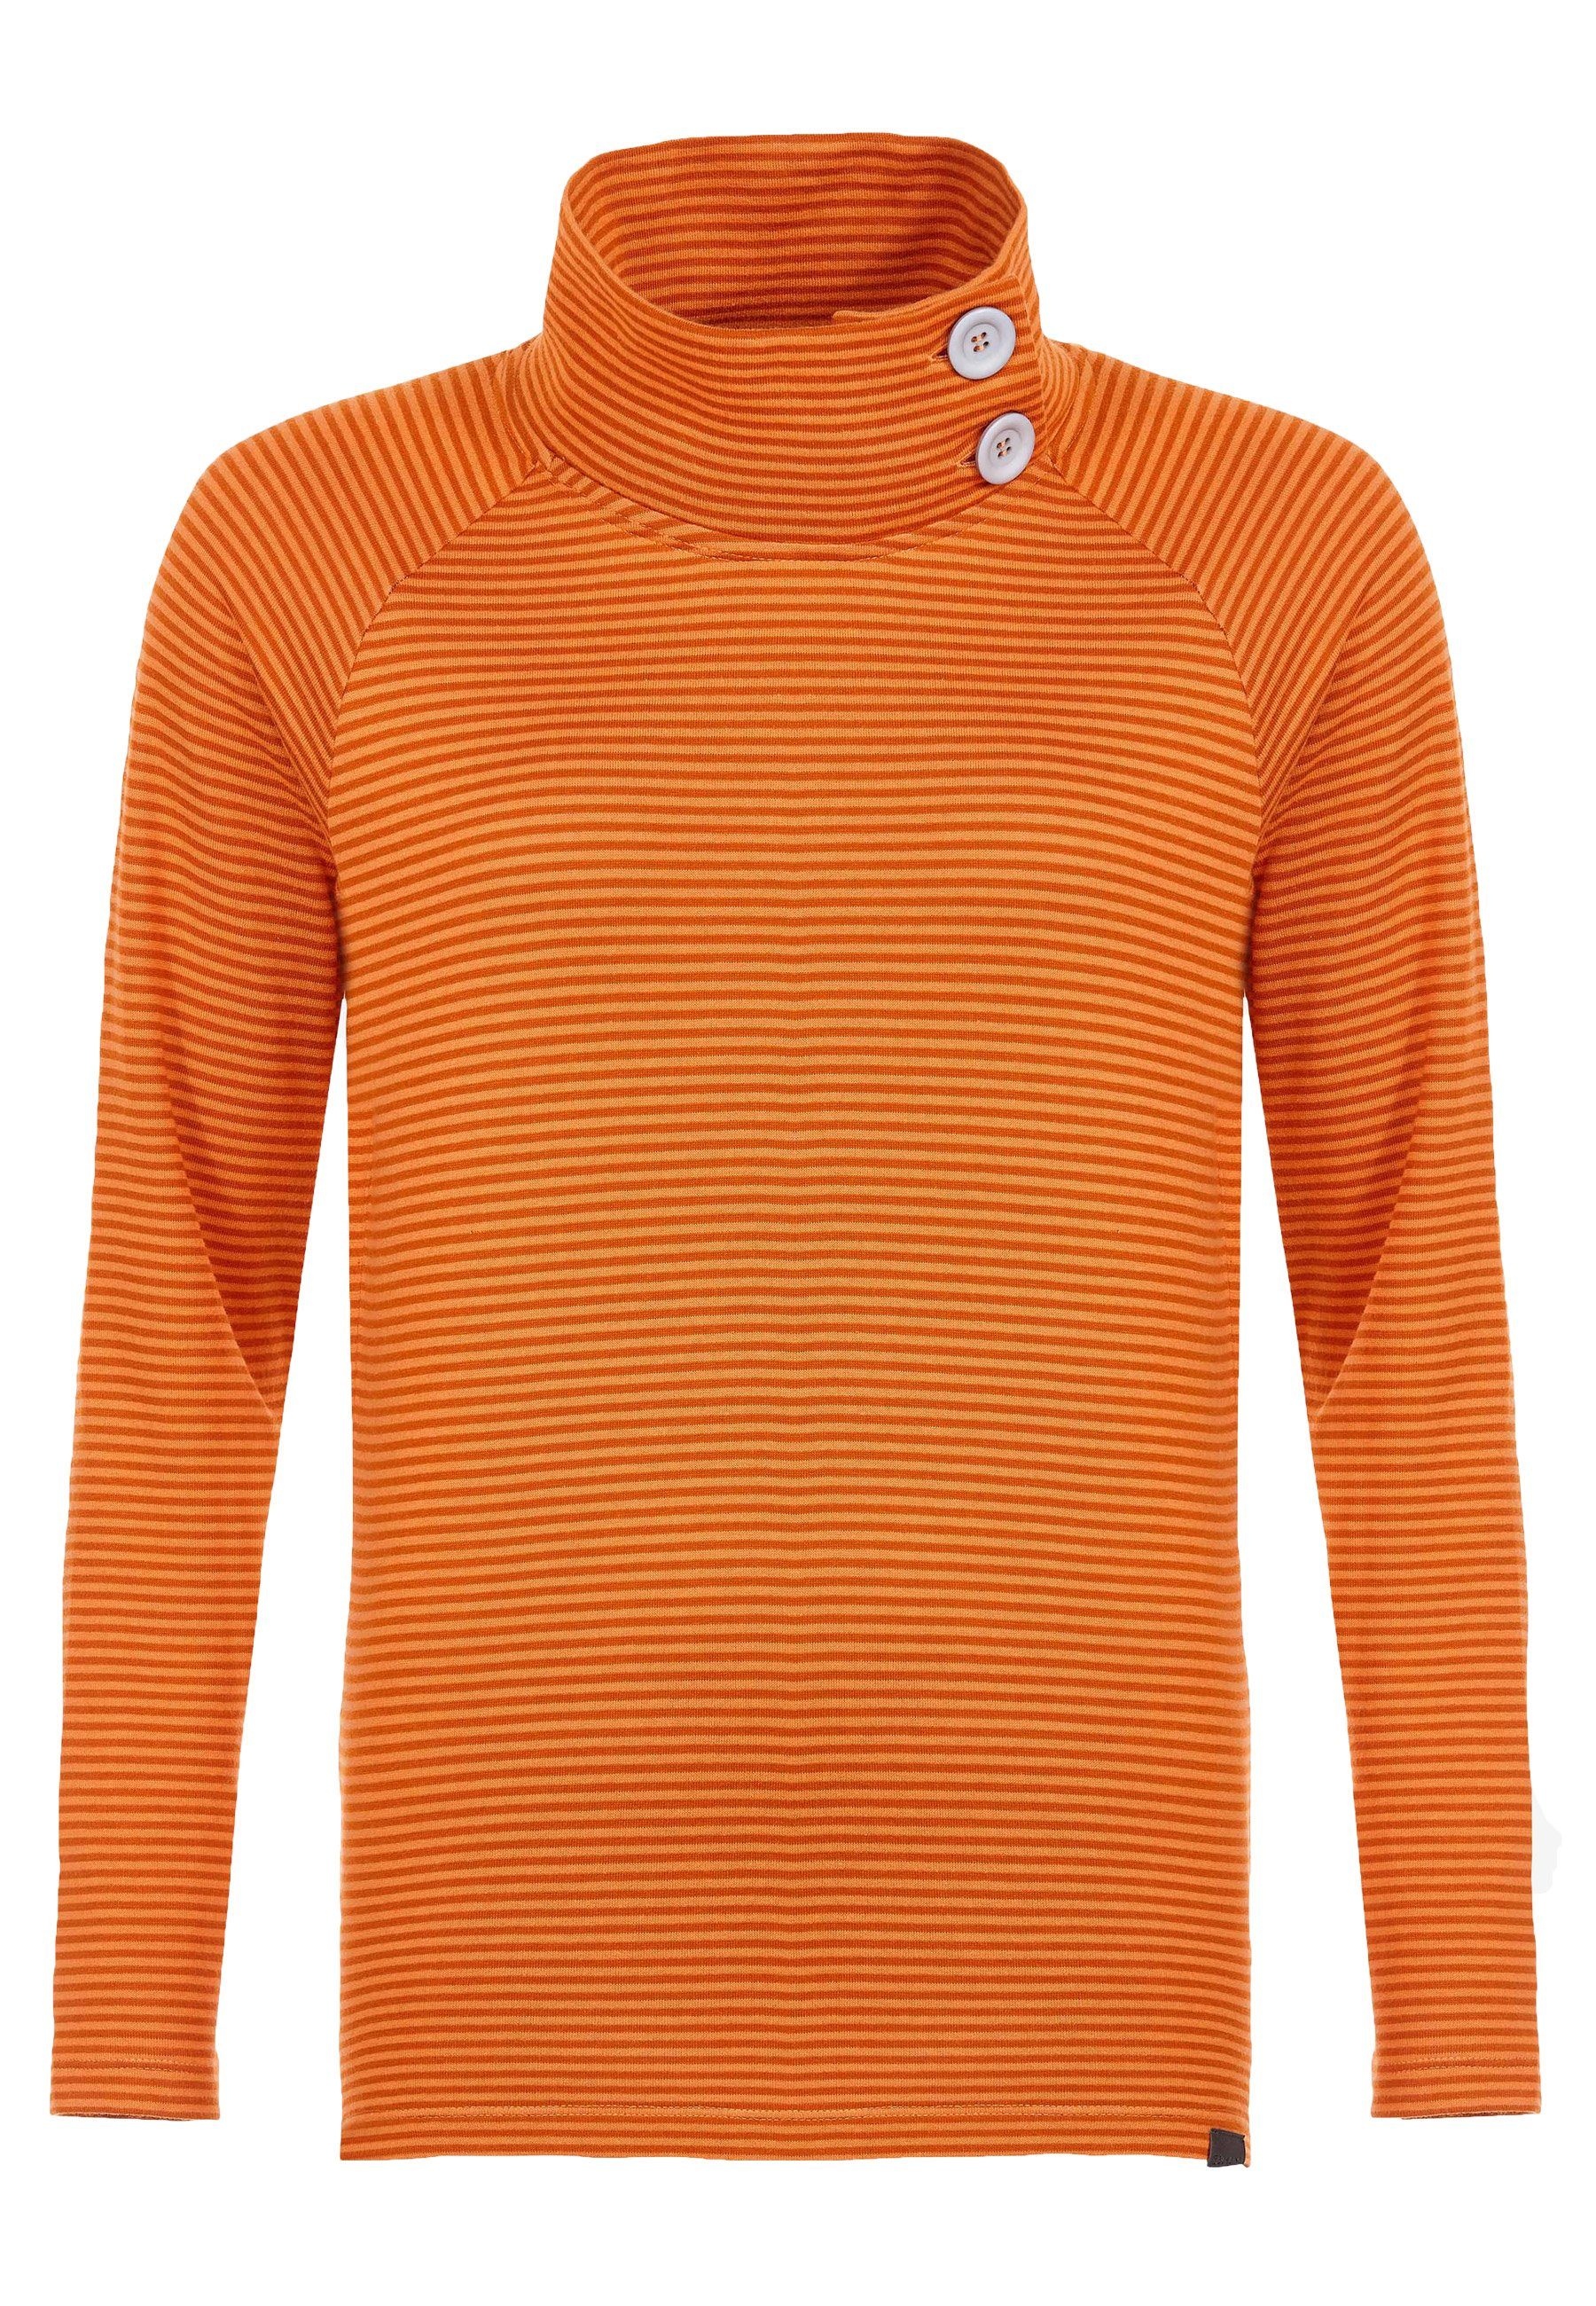 Elkline Sweatshirt By the Sea Streifen Longsleeve Stehkragen mit Knöpfen darkorange - mandarin